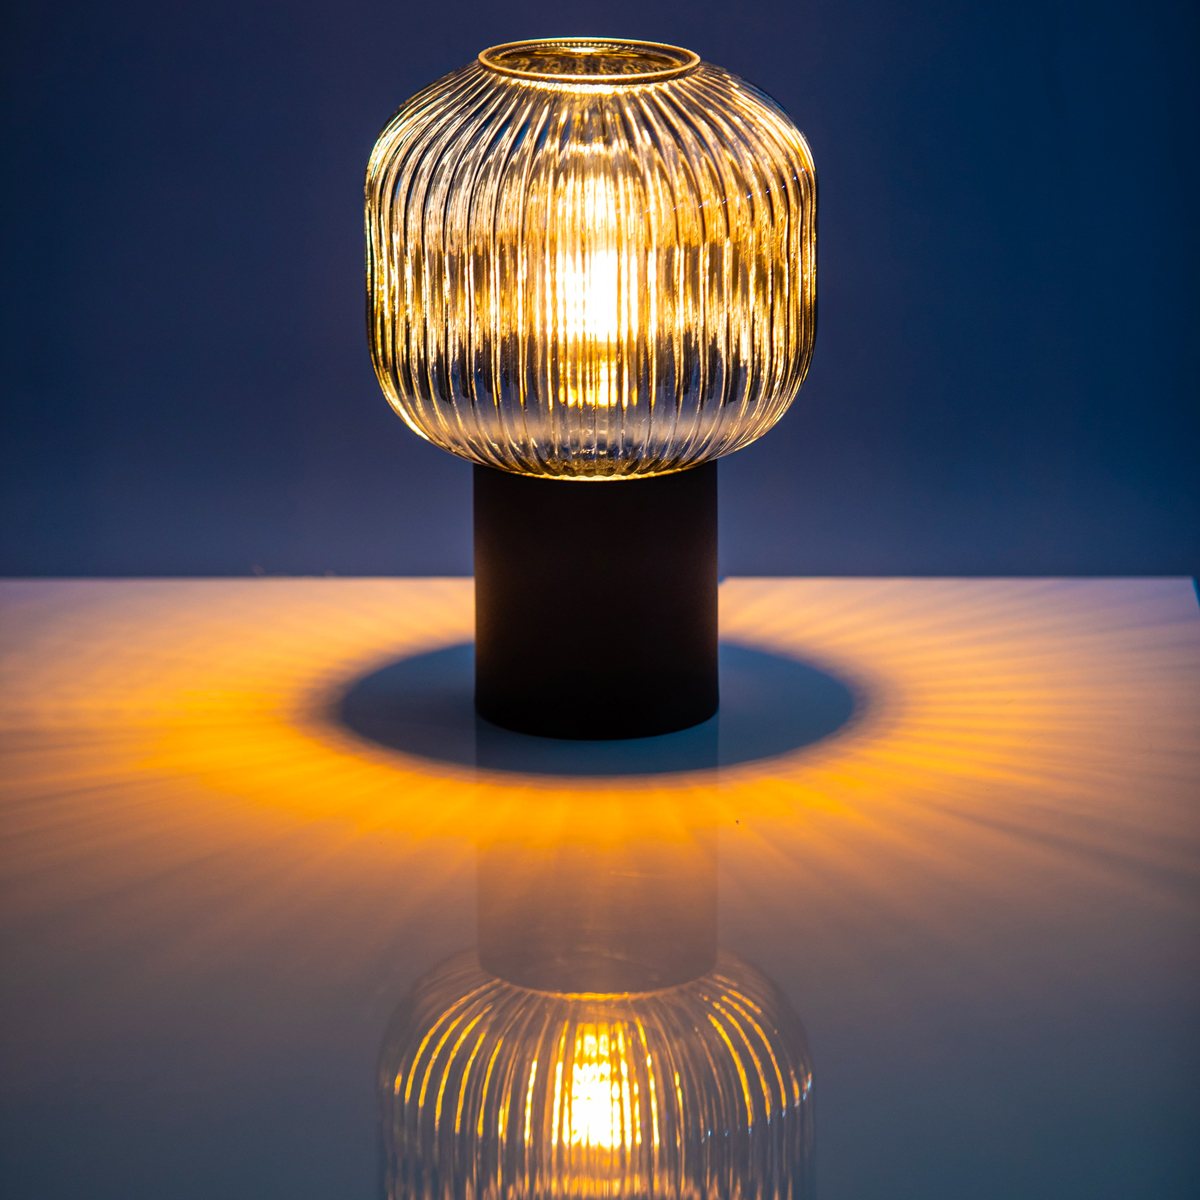 De ribbels van de glazen lampenkap geven de sfeerlamp een modern klassieke uitstraling. 